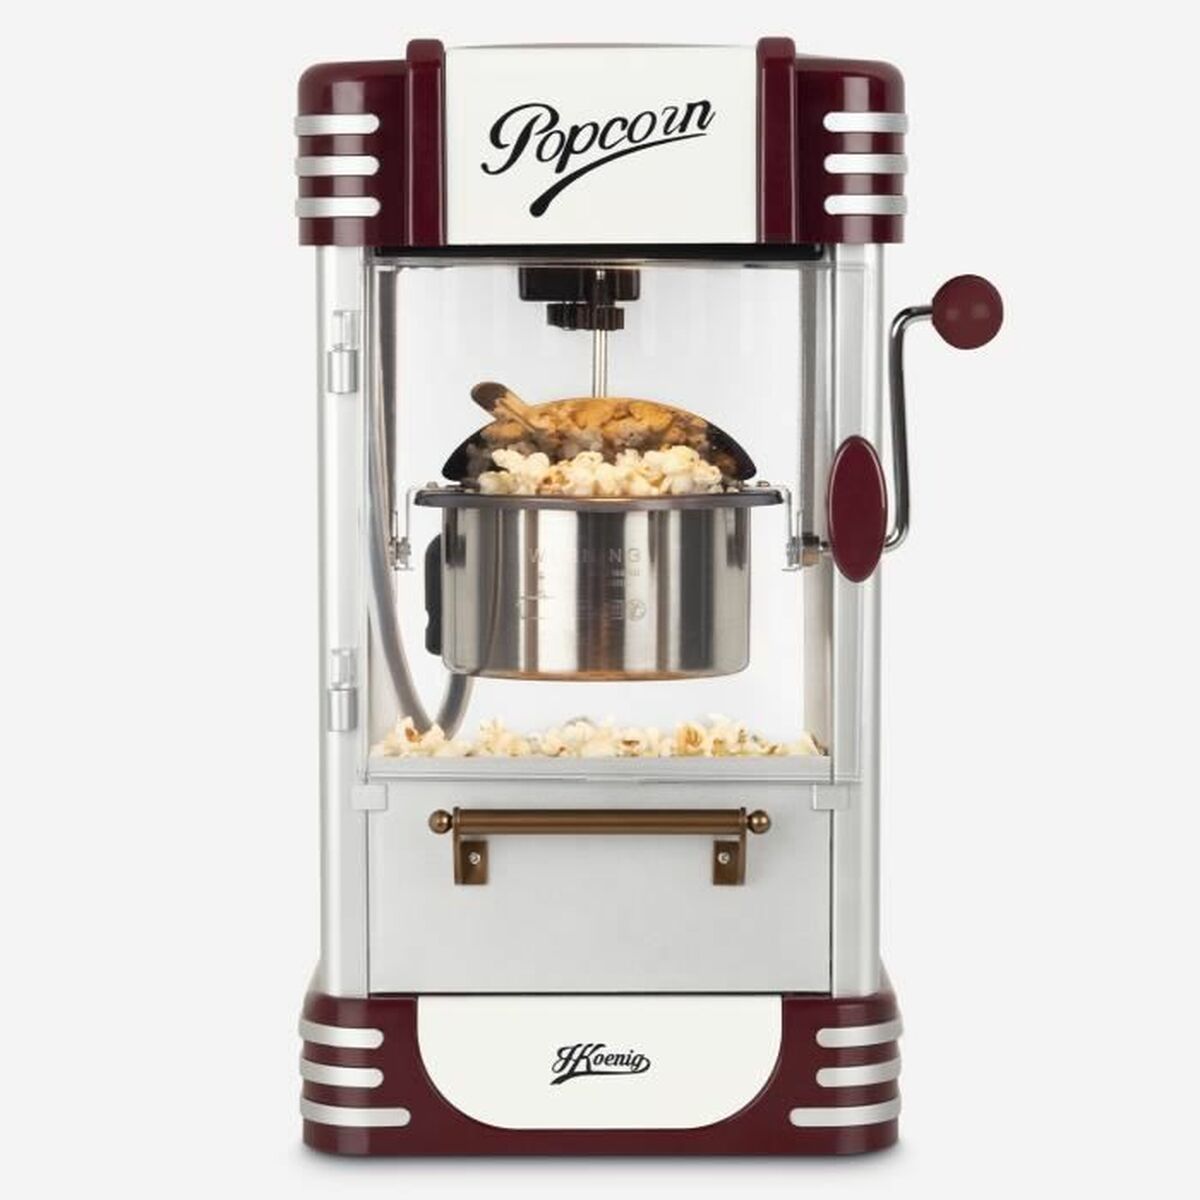 Popcornmaschine Hkoenig Granatrot - CA International 